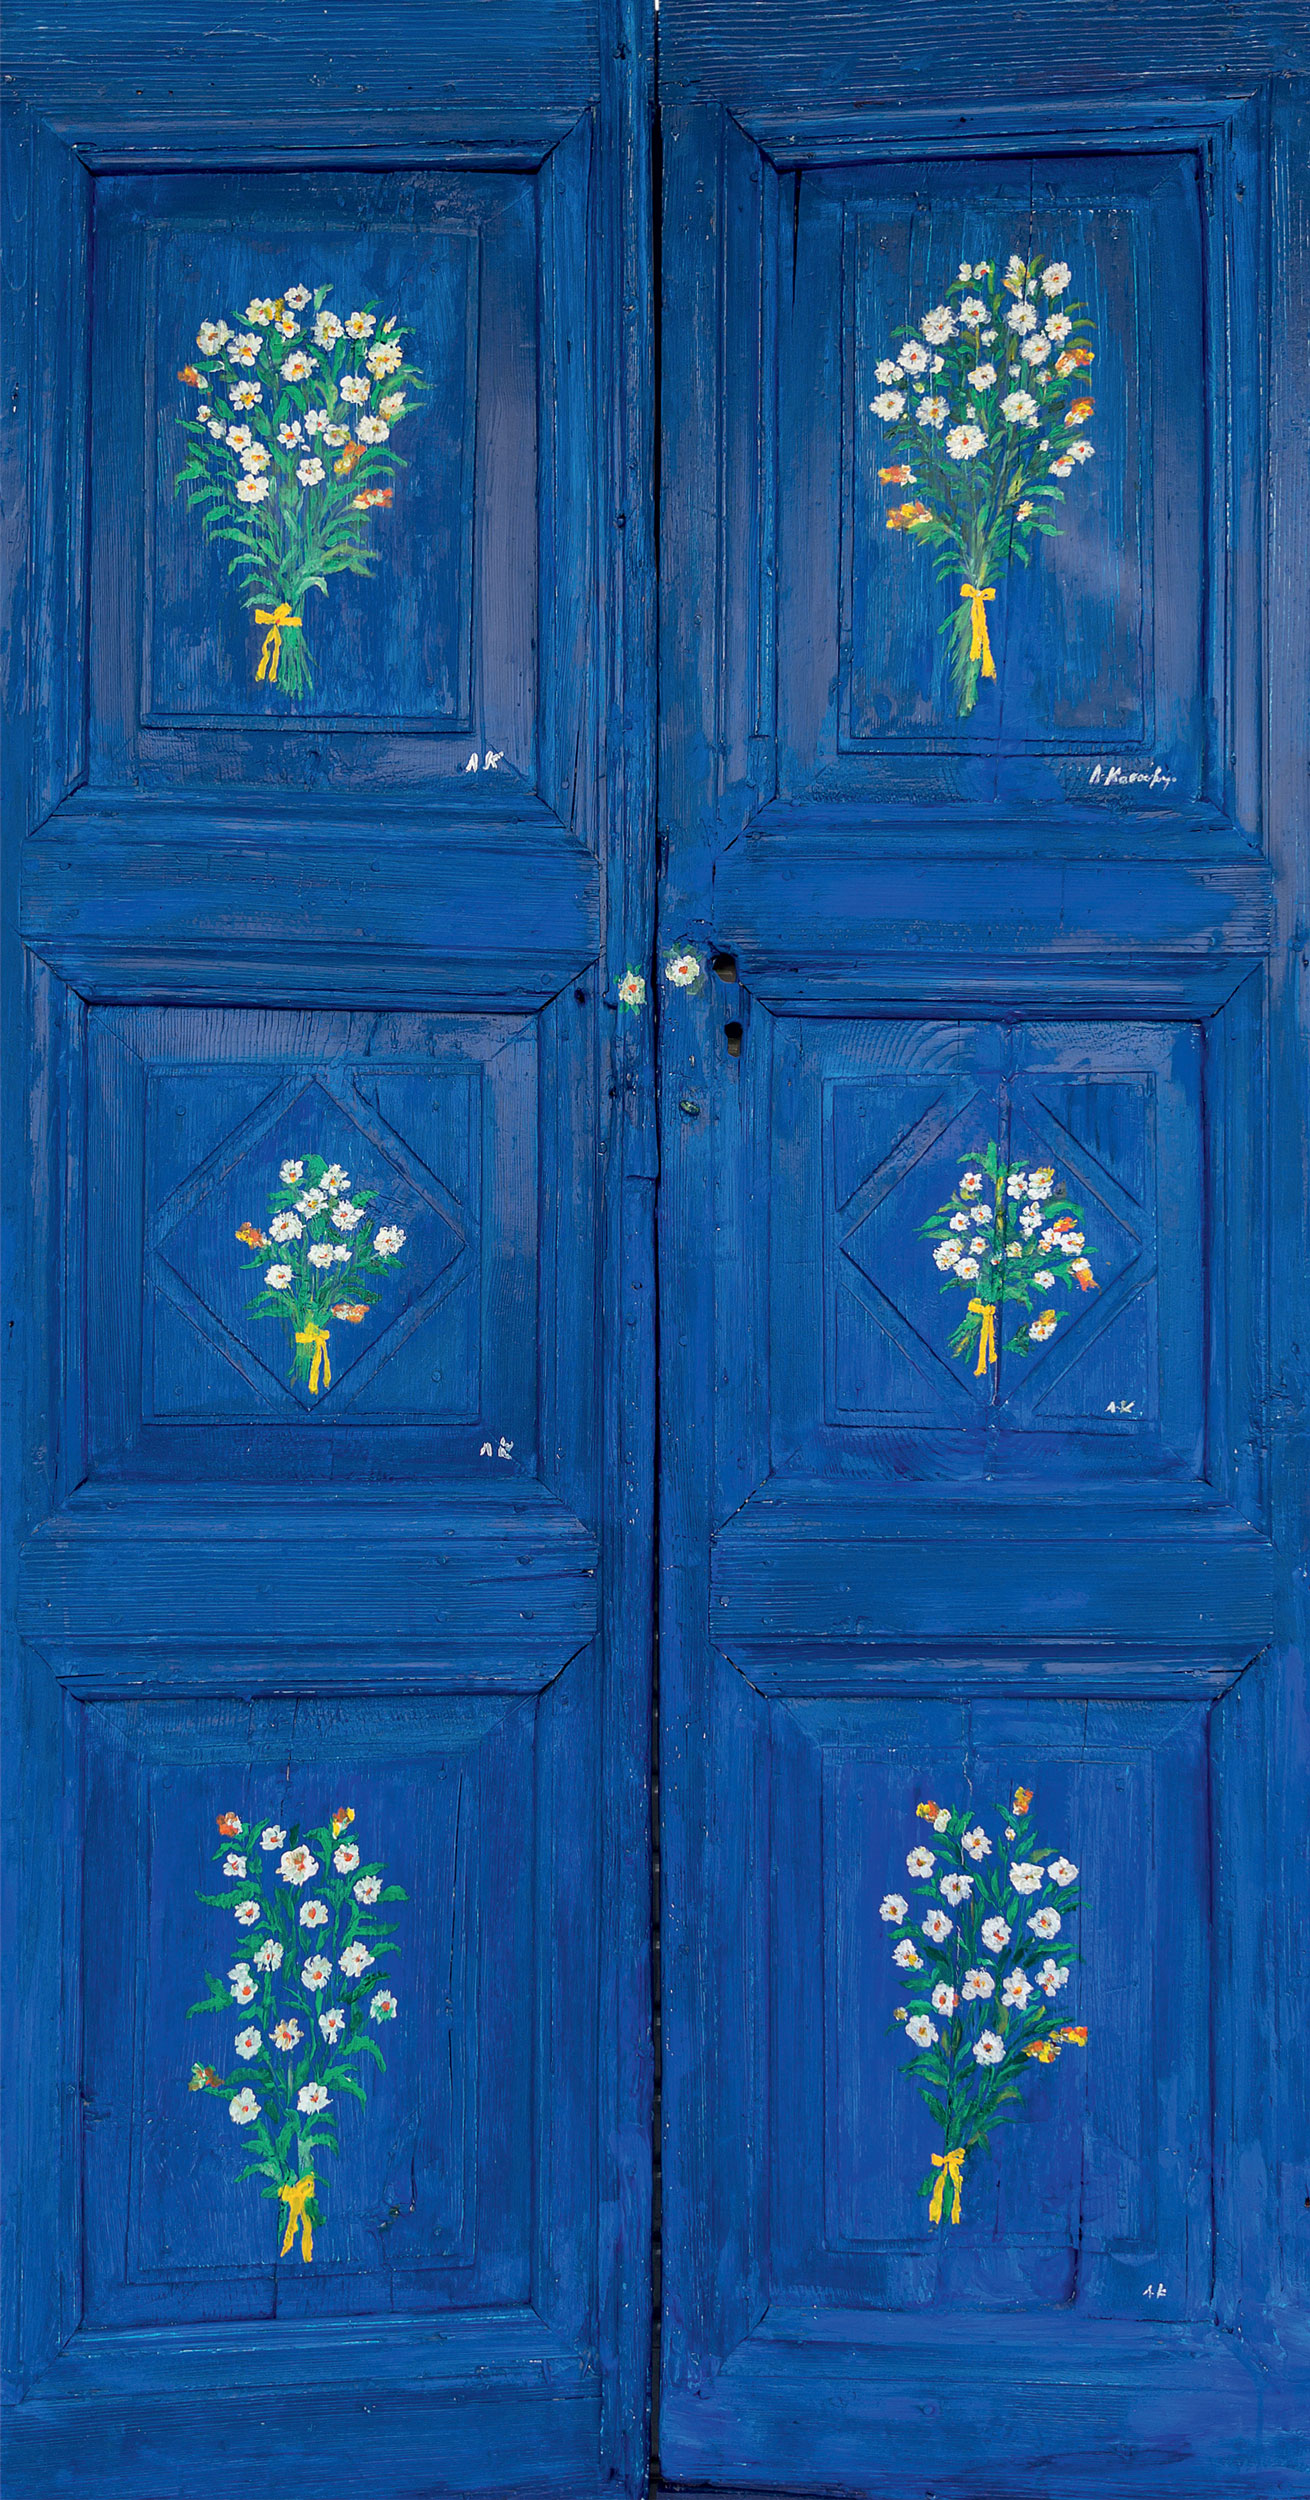 μπλε πορτα με λουλουδια